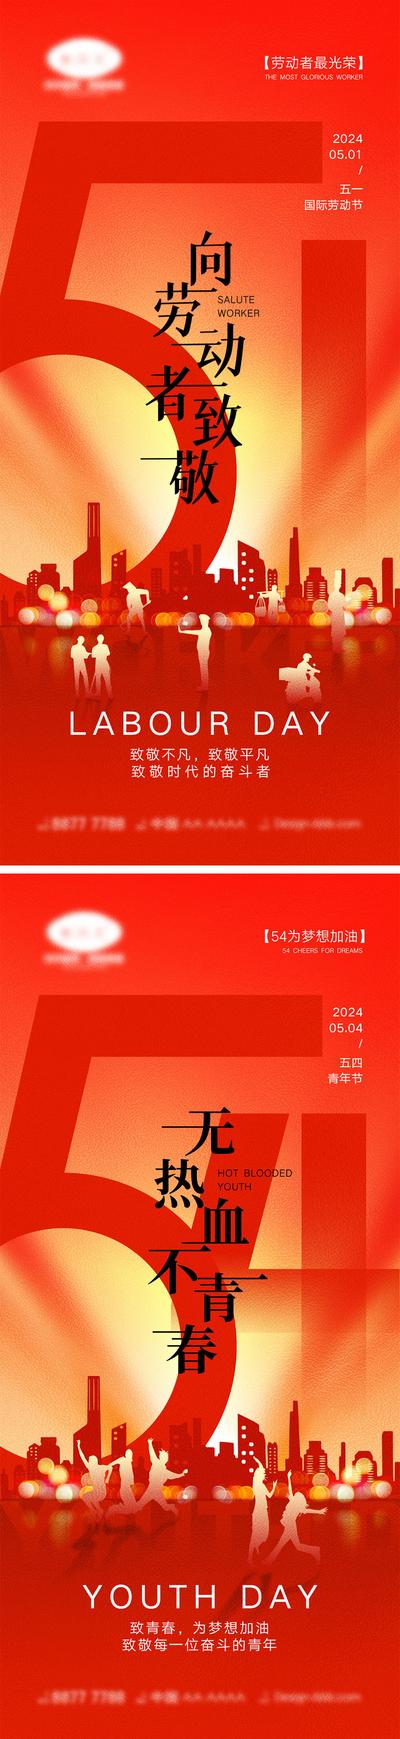 南门网 劳动节青年节海报